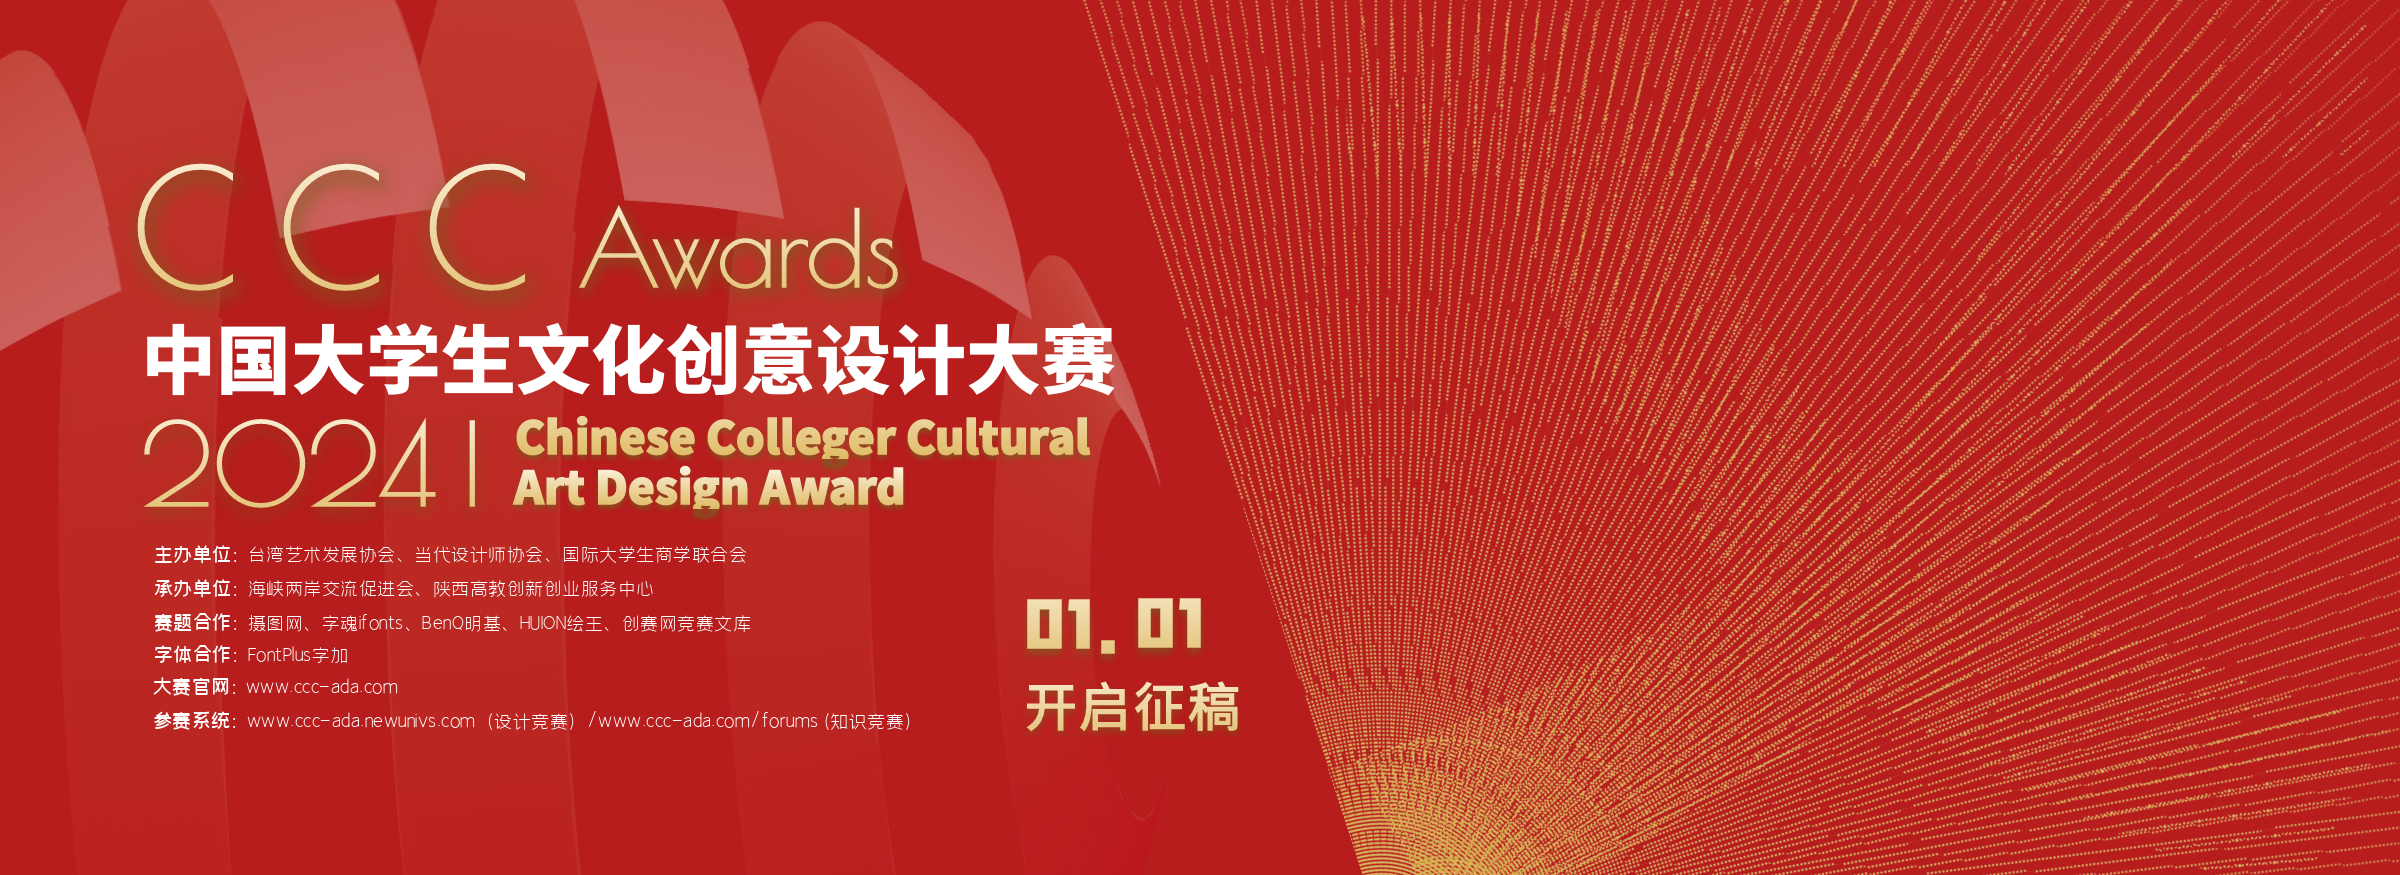 2024年中国大学生文化创意设计大赛-横板海报-中国大学生文化创意设计大赛-大文赛官网